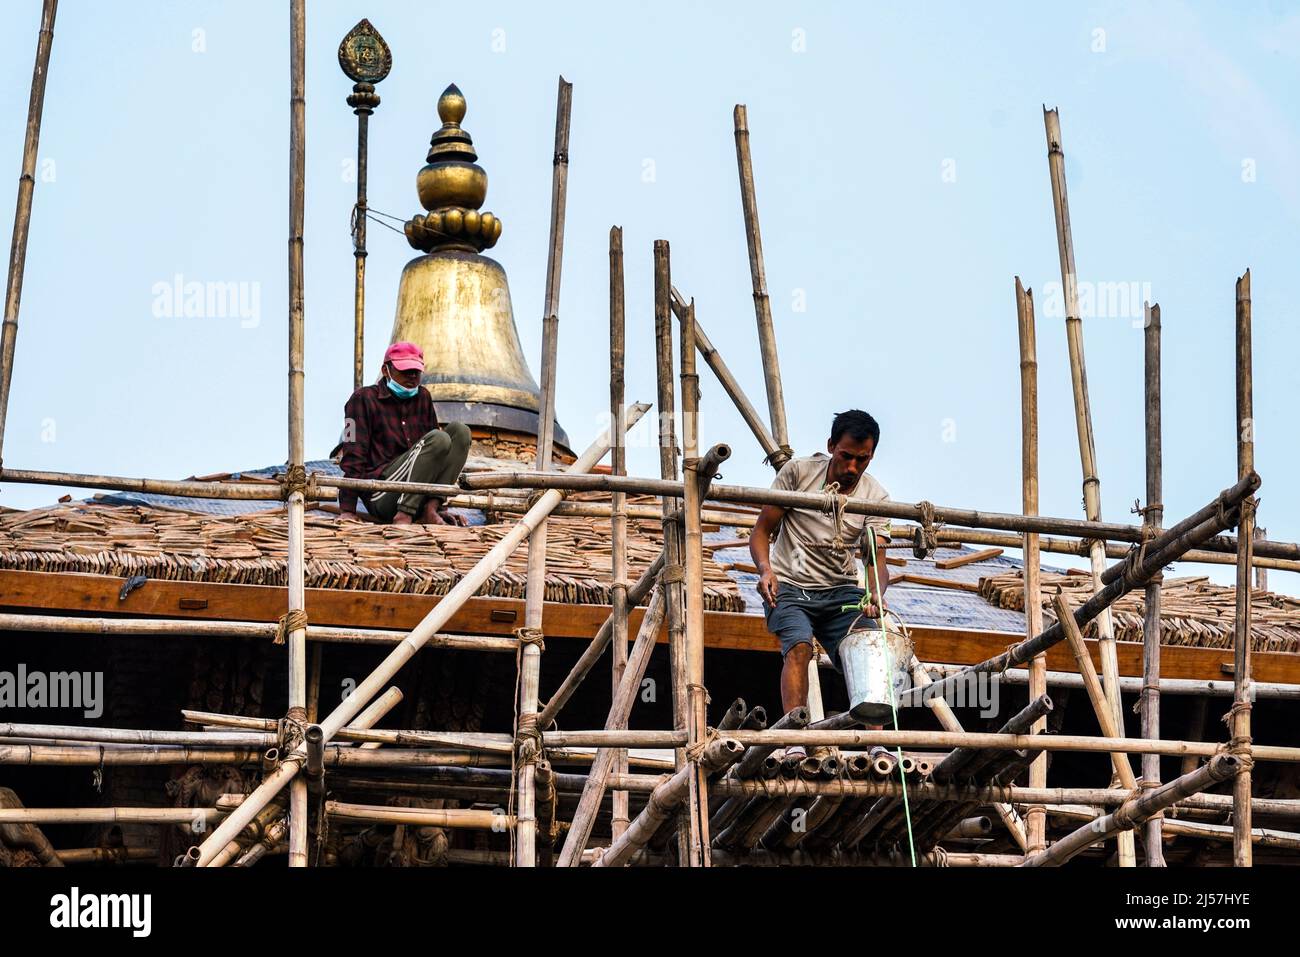 Durch das Erdbeben am 25.4.2015 zerstörte Tempel im Tempelbezirk Durbar Square werden reatauriert, Katmandú, Nepal Foto de stock